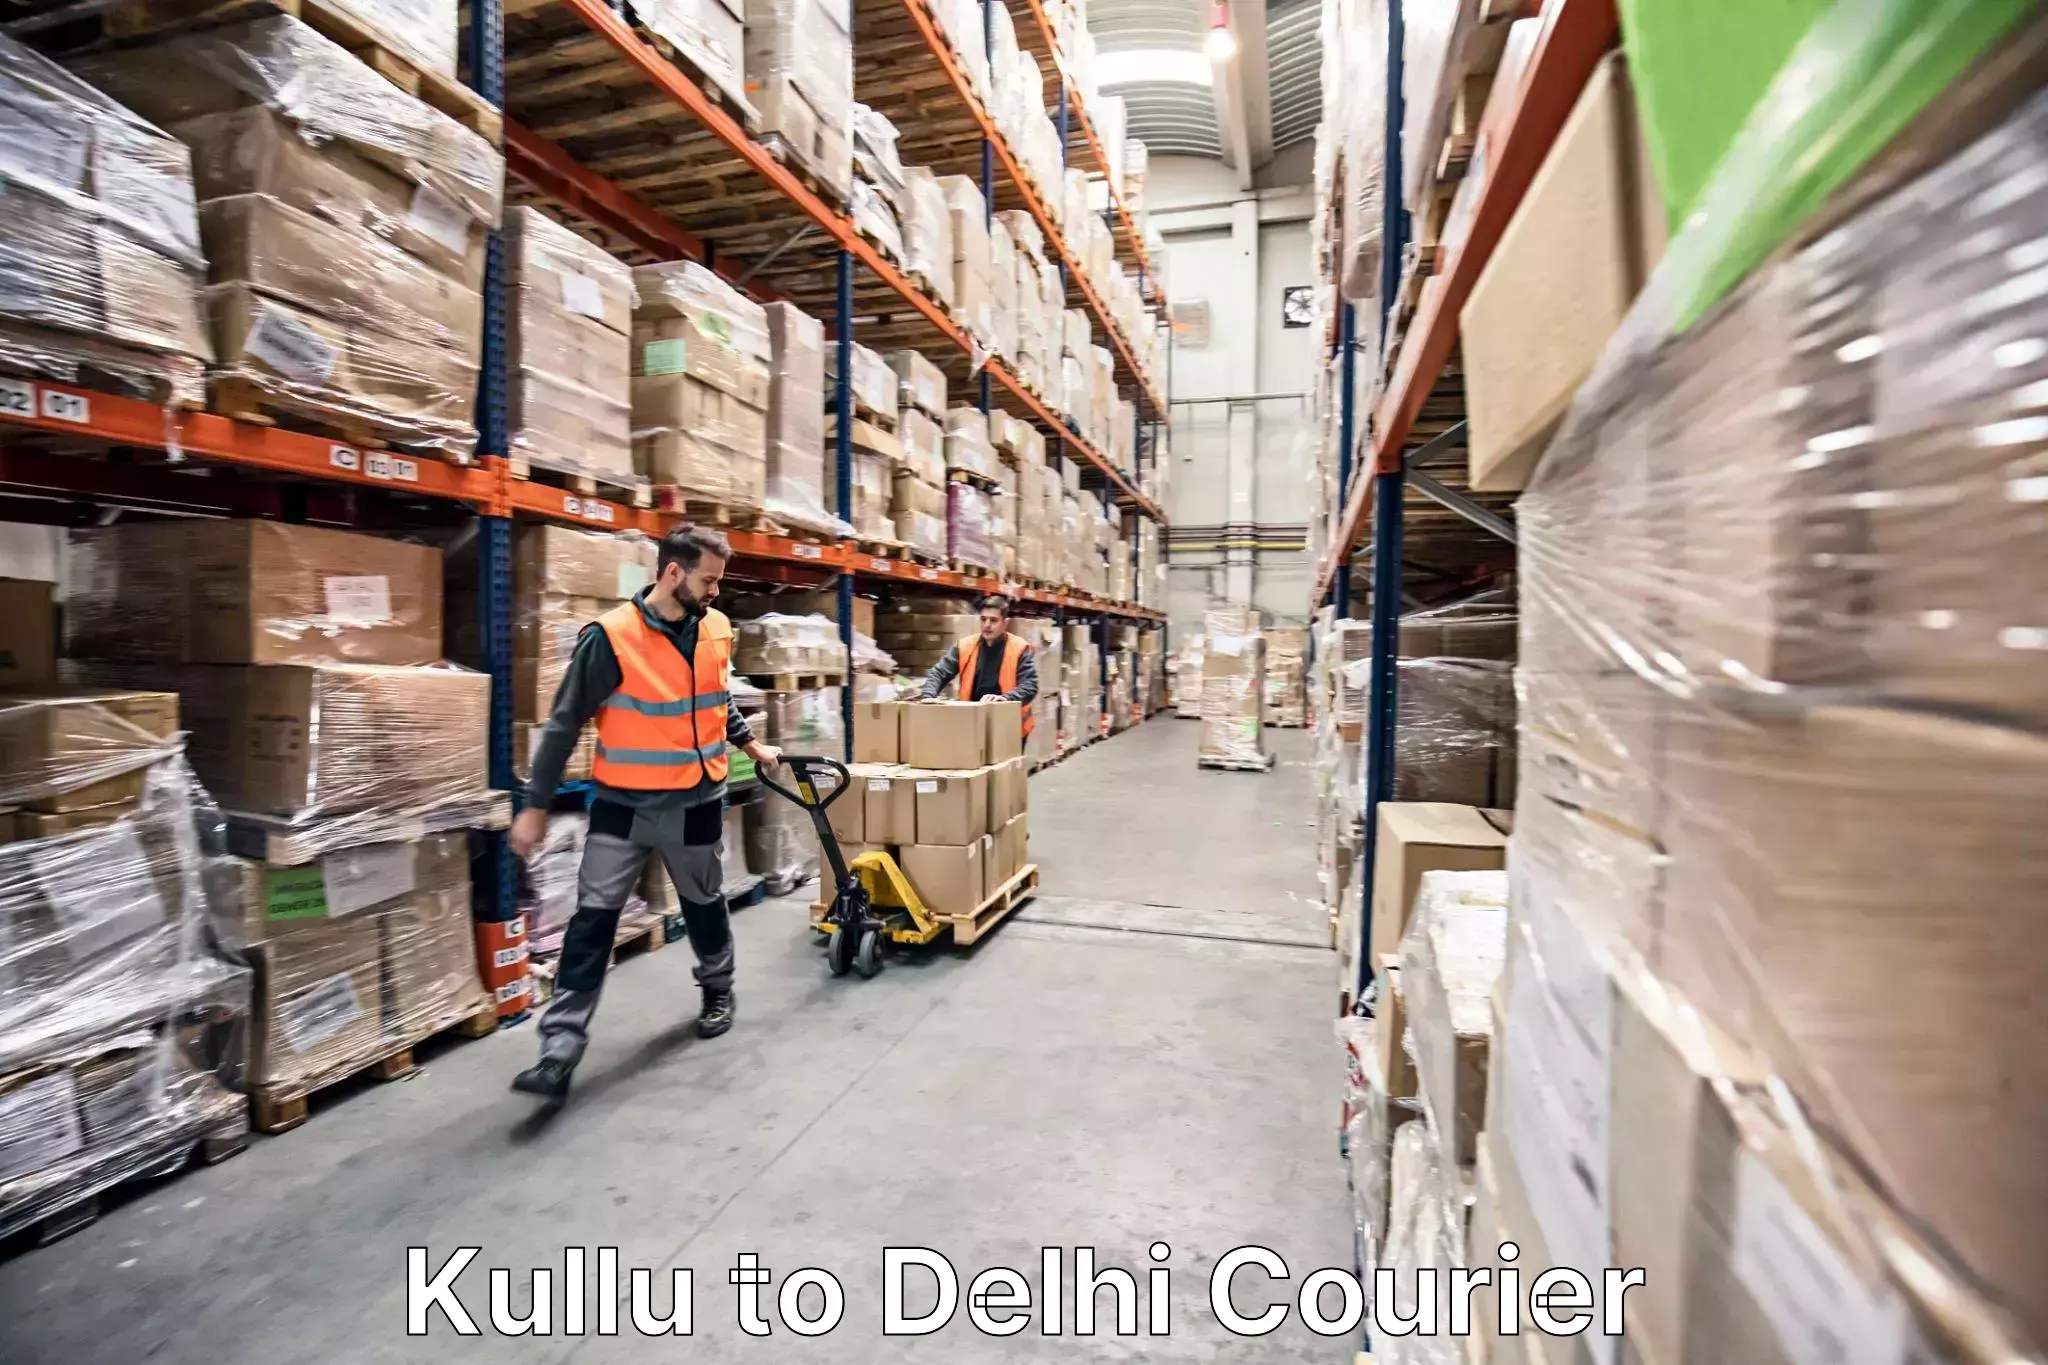 Furniture transport service Kullu to NCR